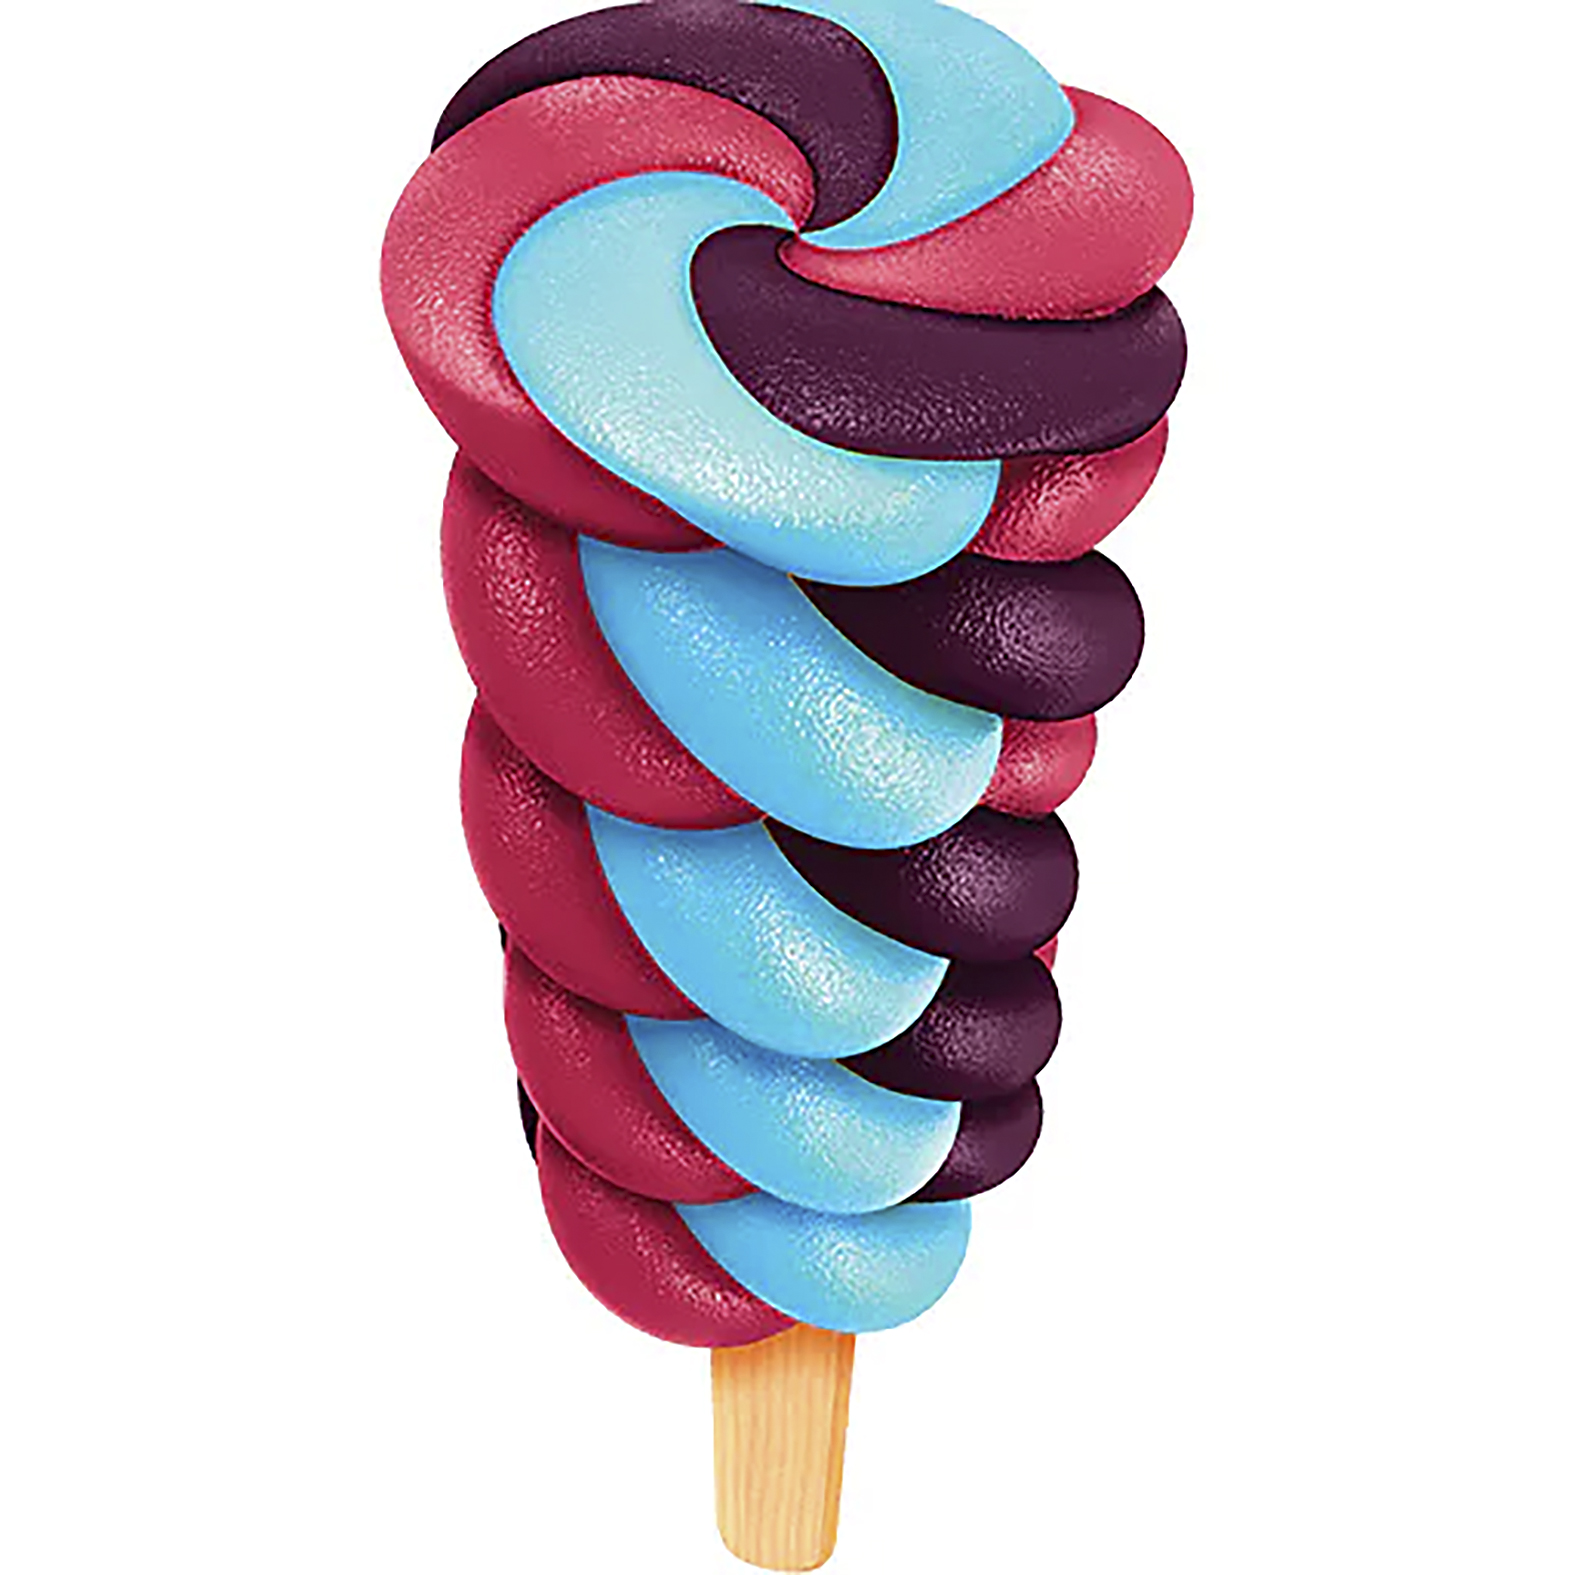 En snurrad isglass i blått och lila. Twister Cosmixx. 